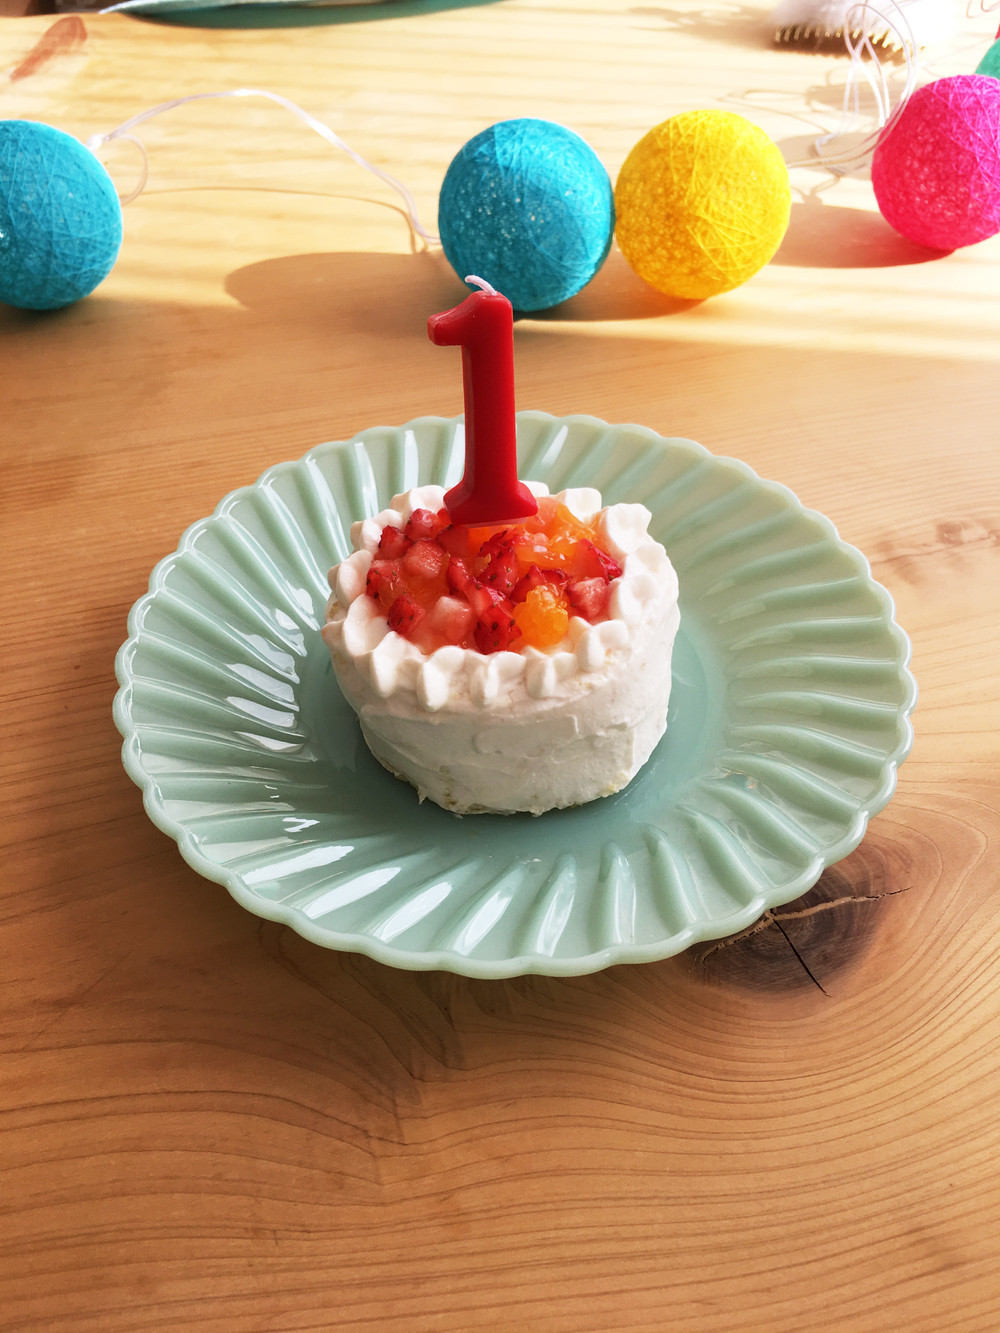 １歳お誕生日 離乳食ケーキ ベビーダノン レシピ 作り方 By Om クックパッド